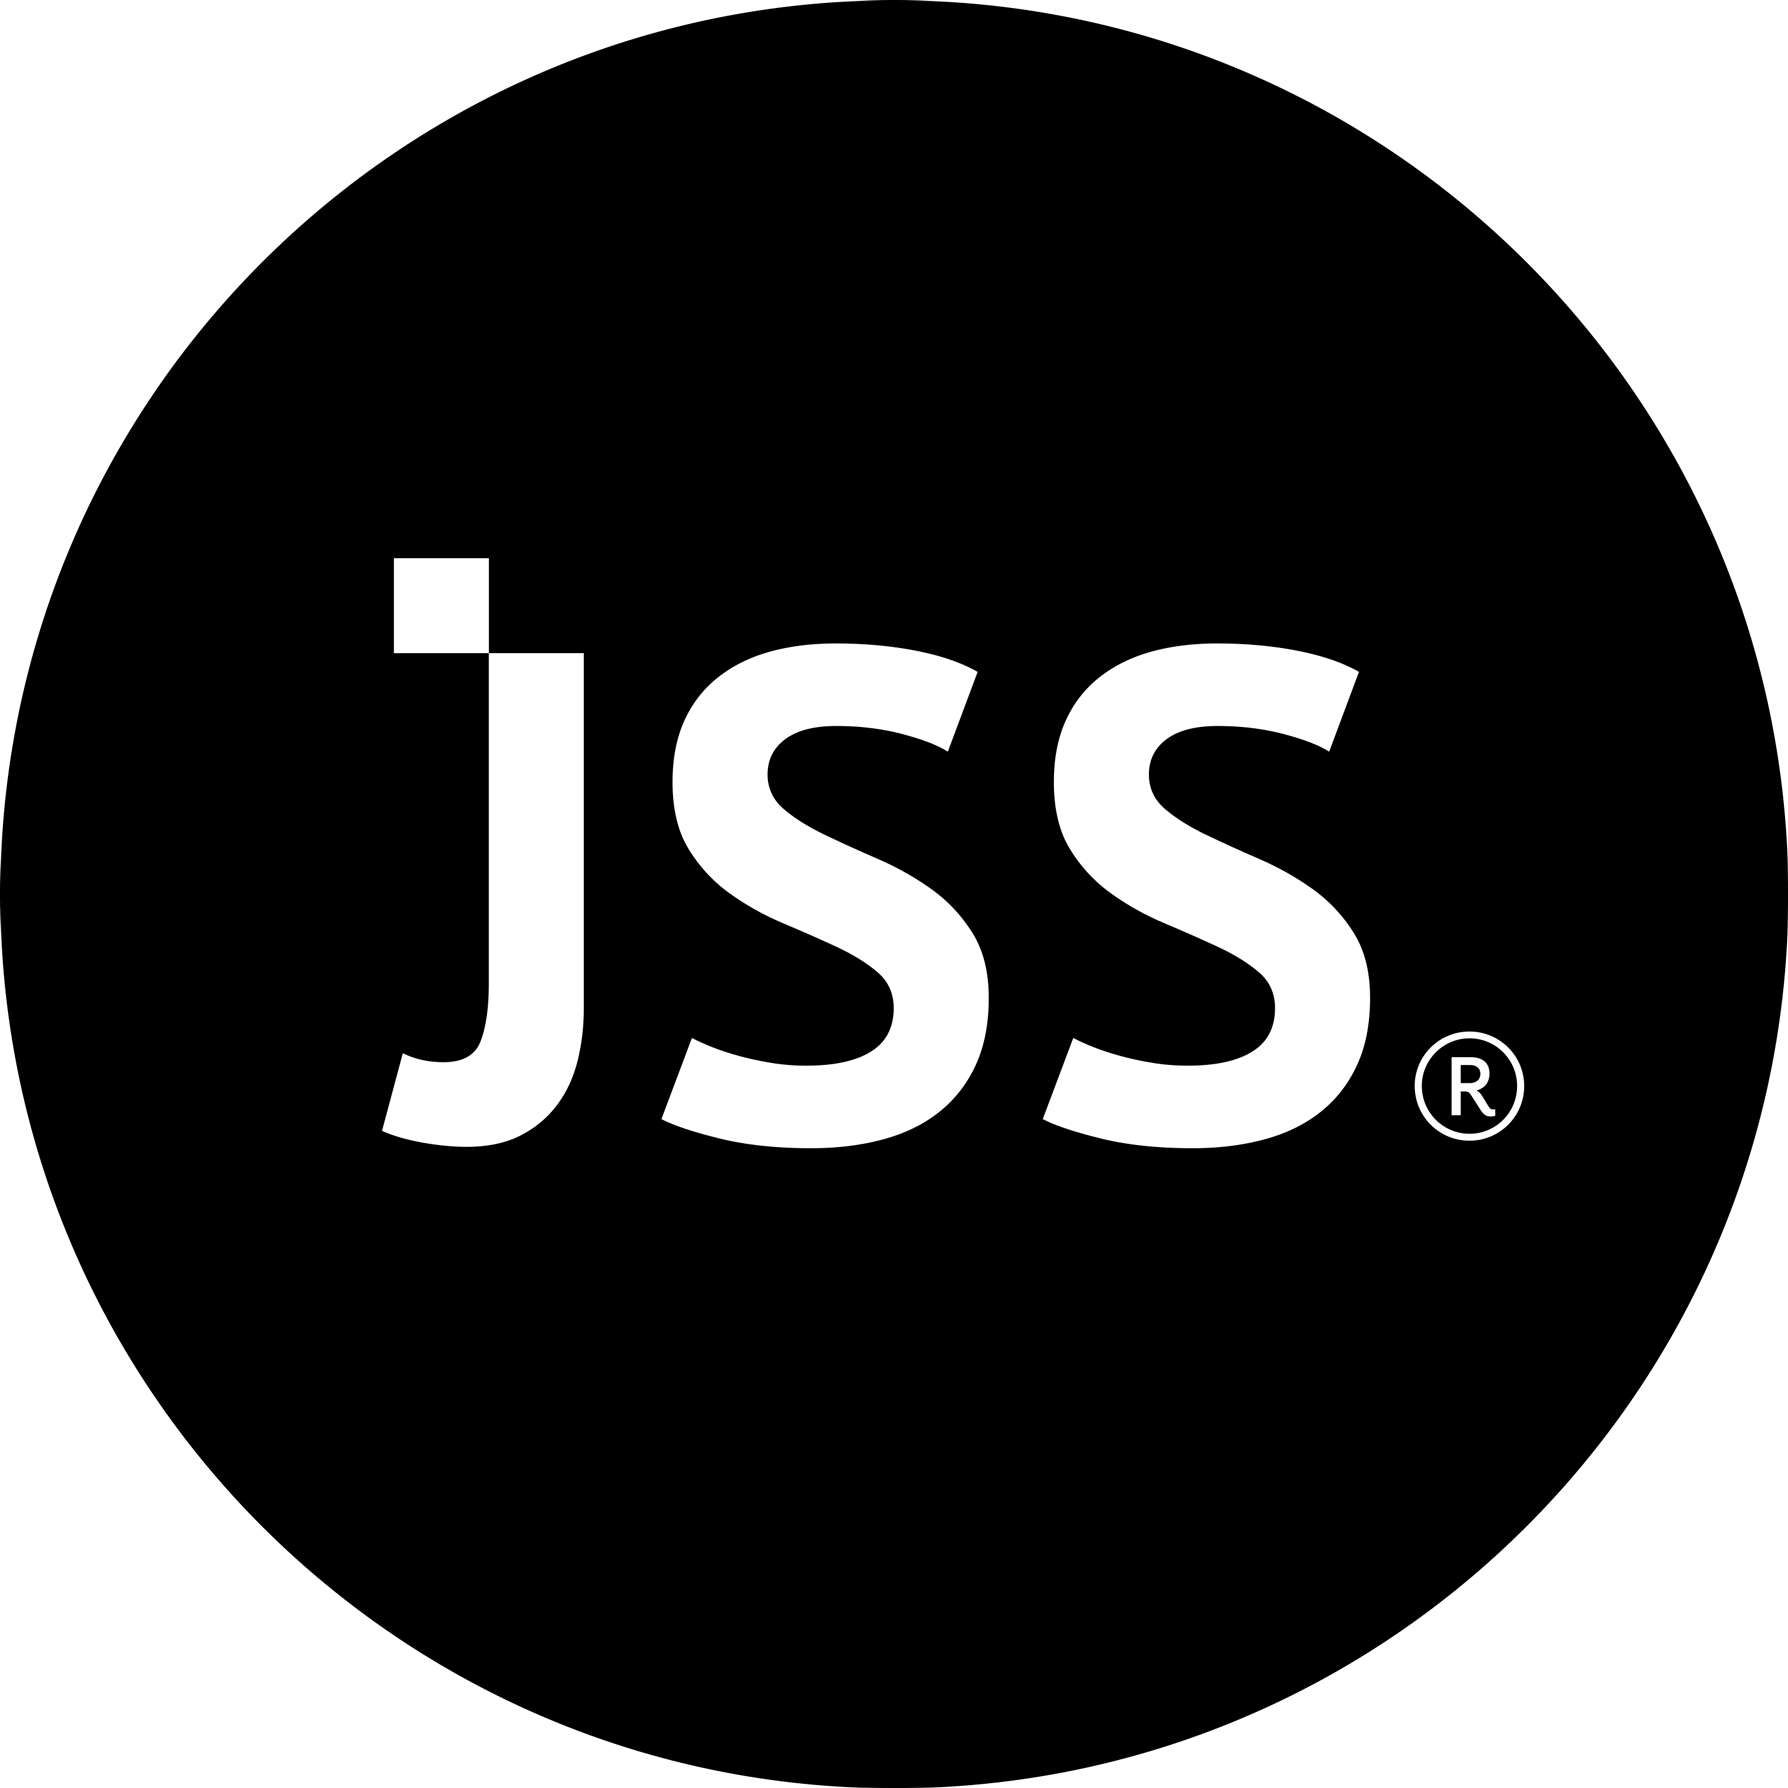 JSS Design